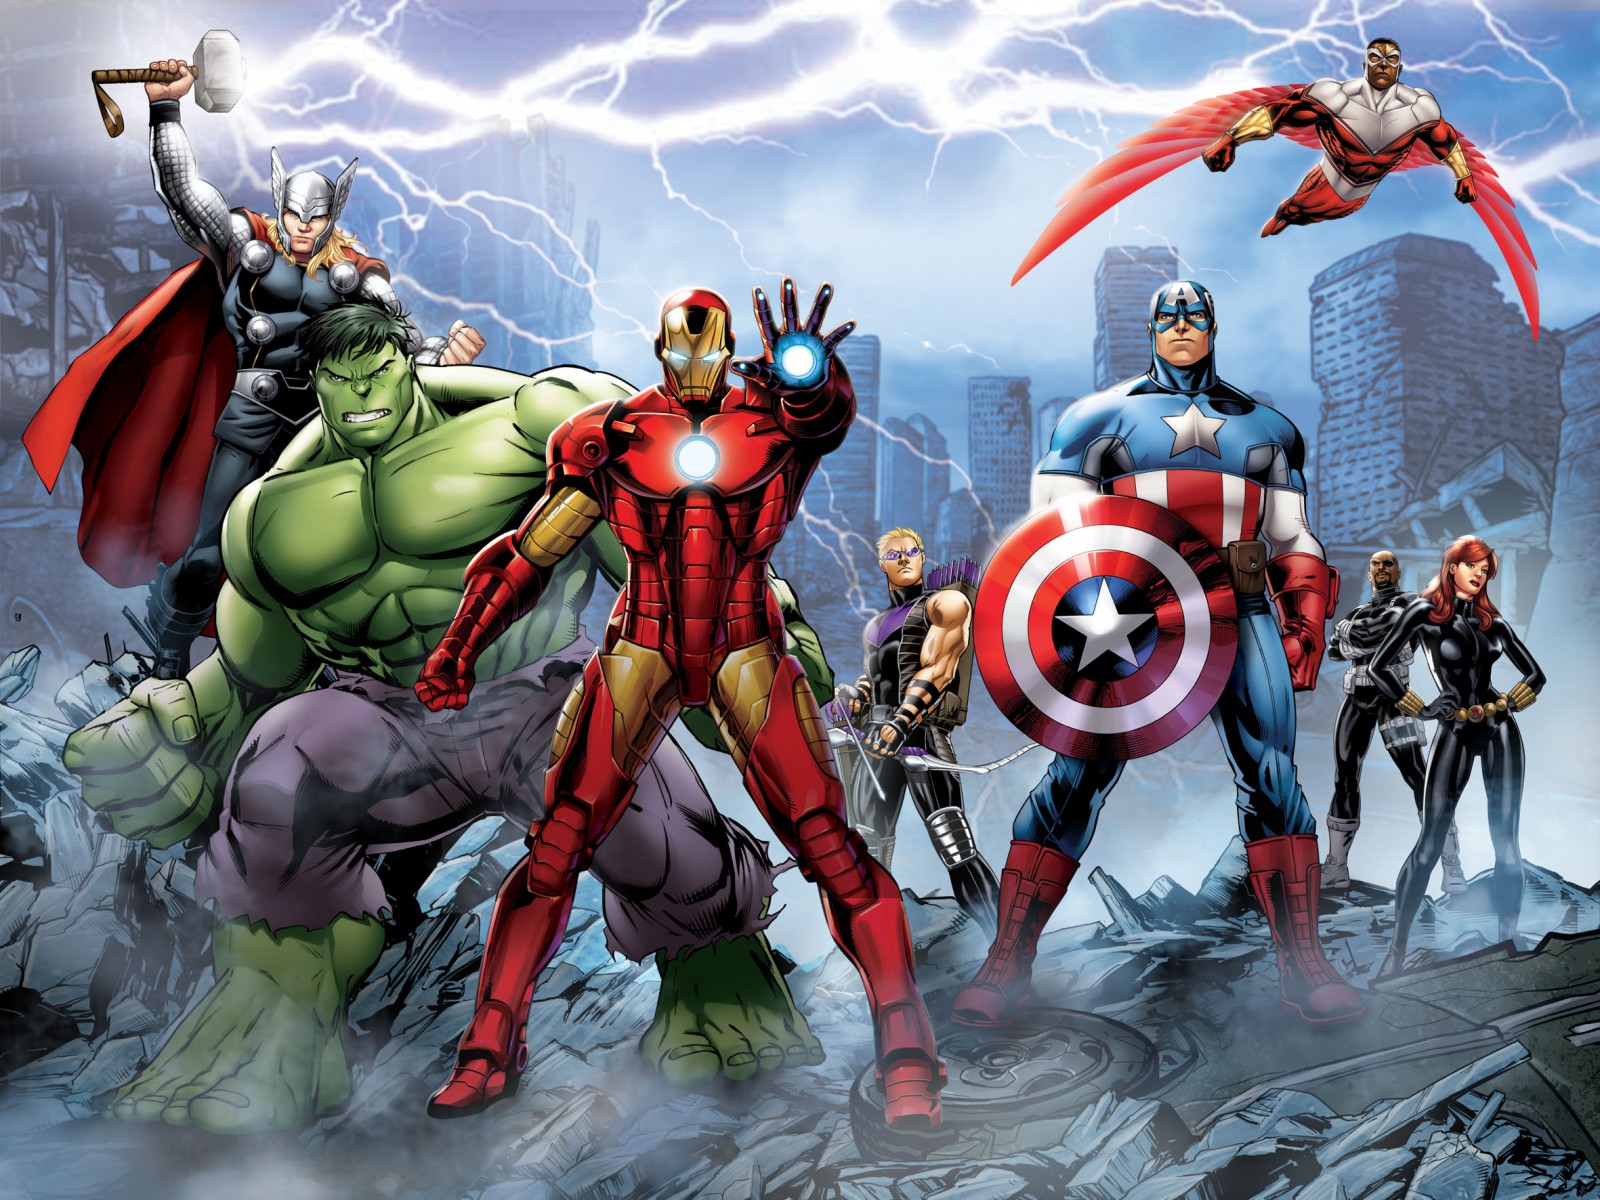 Xxl Photo Wallpaper Mural Marvel The Avengers Hulk - Painel Para Festa Vingadores , HD Wallpaper & Backgrounds